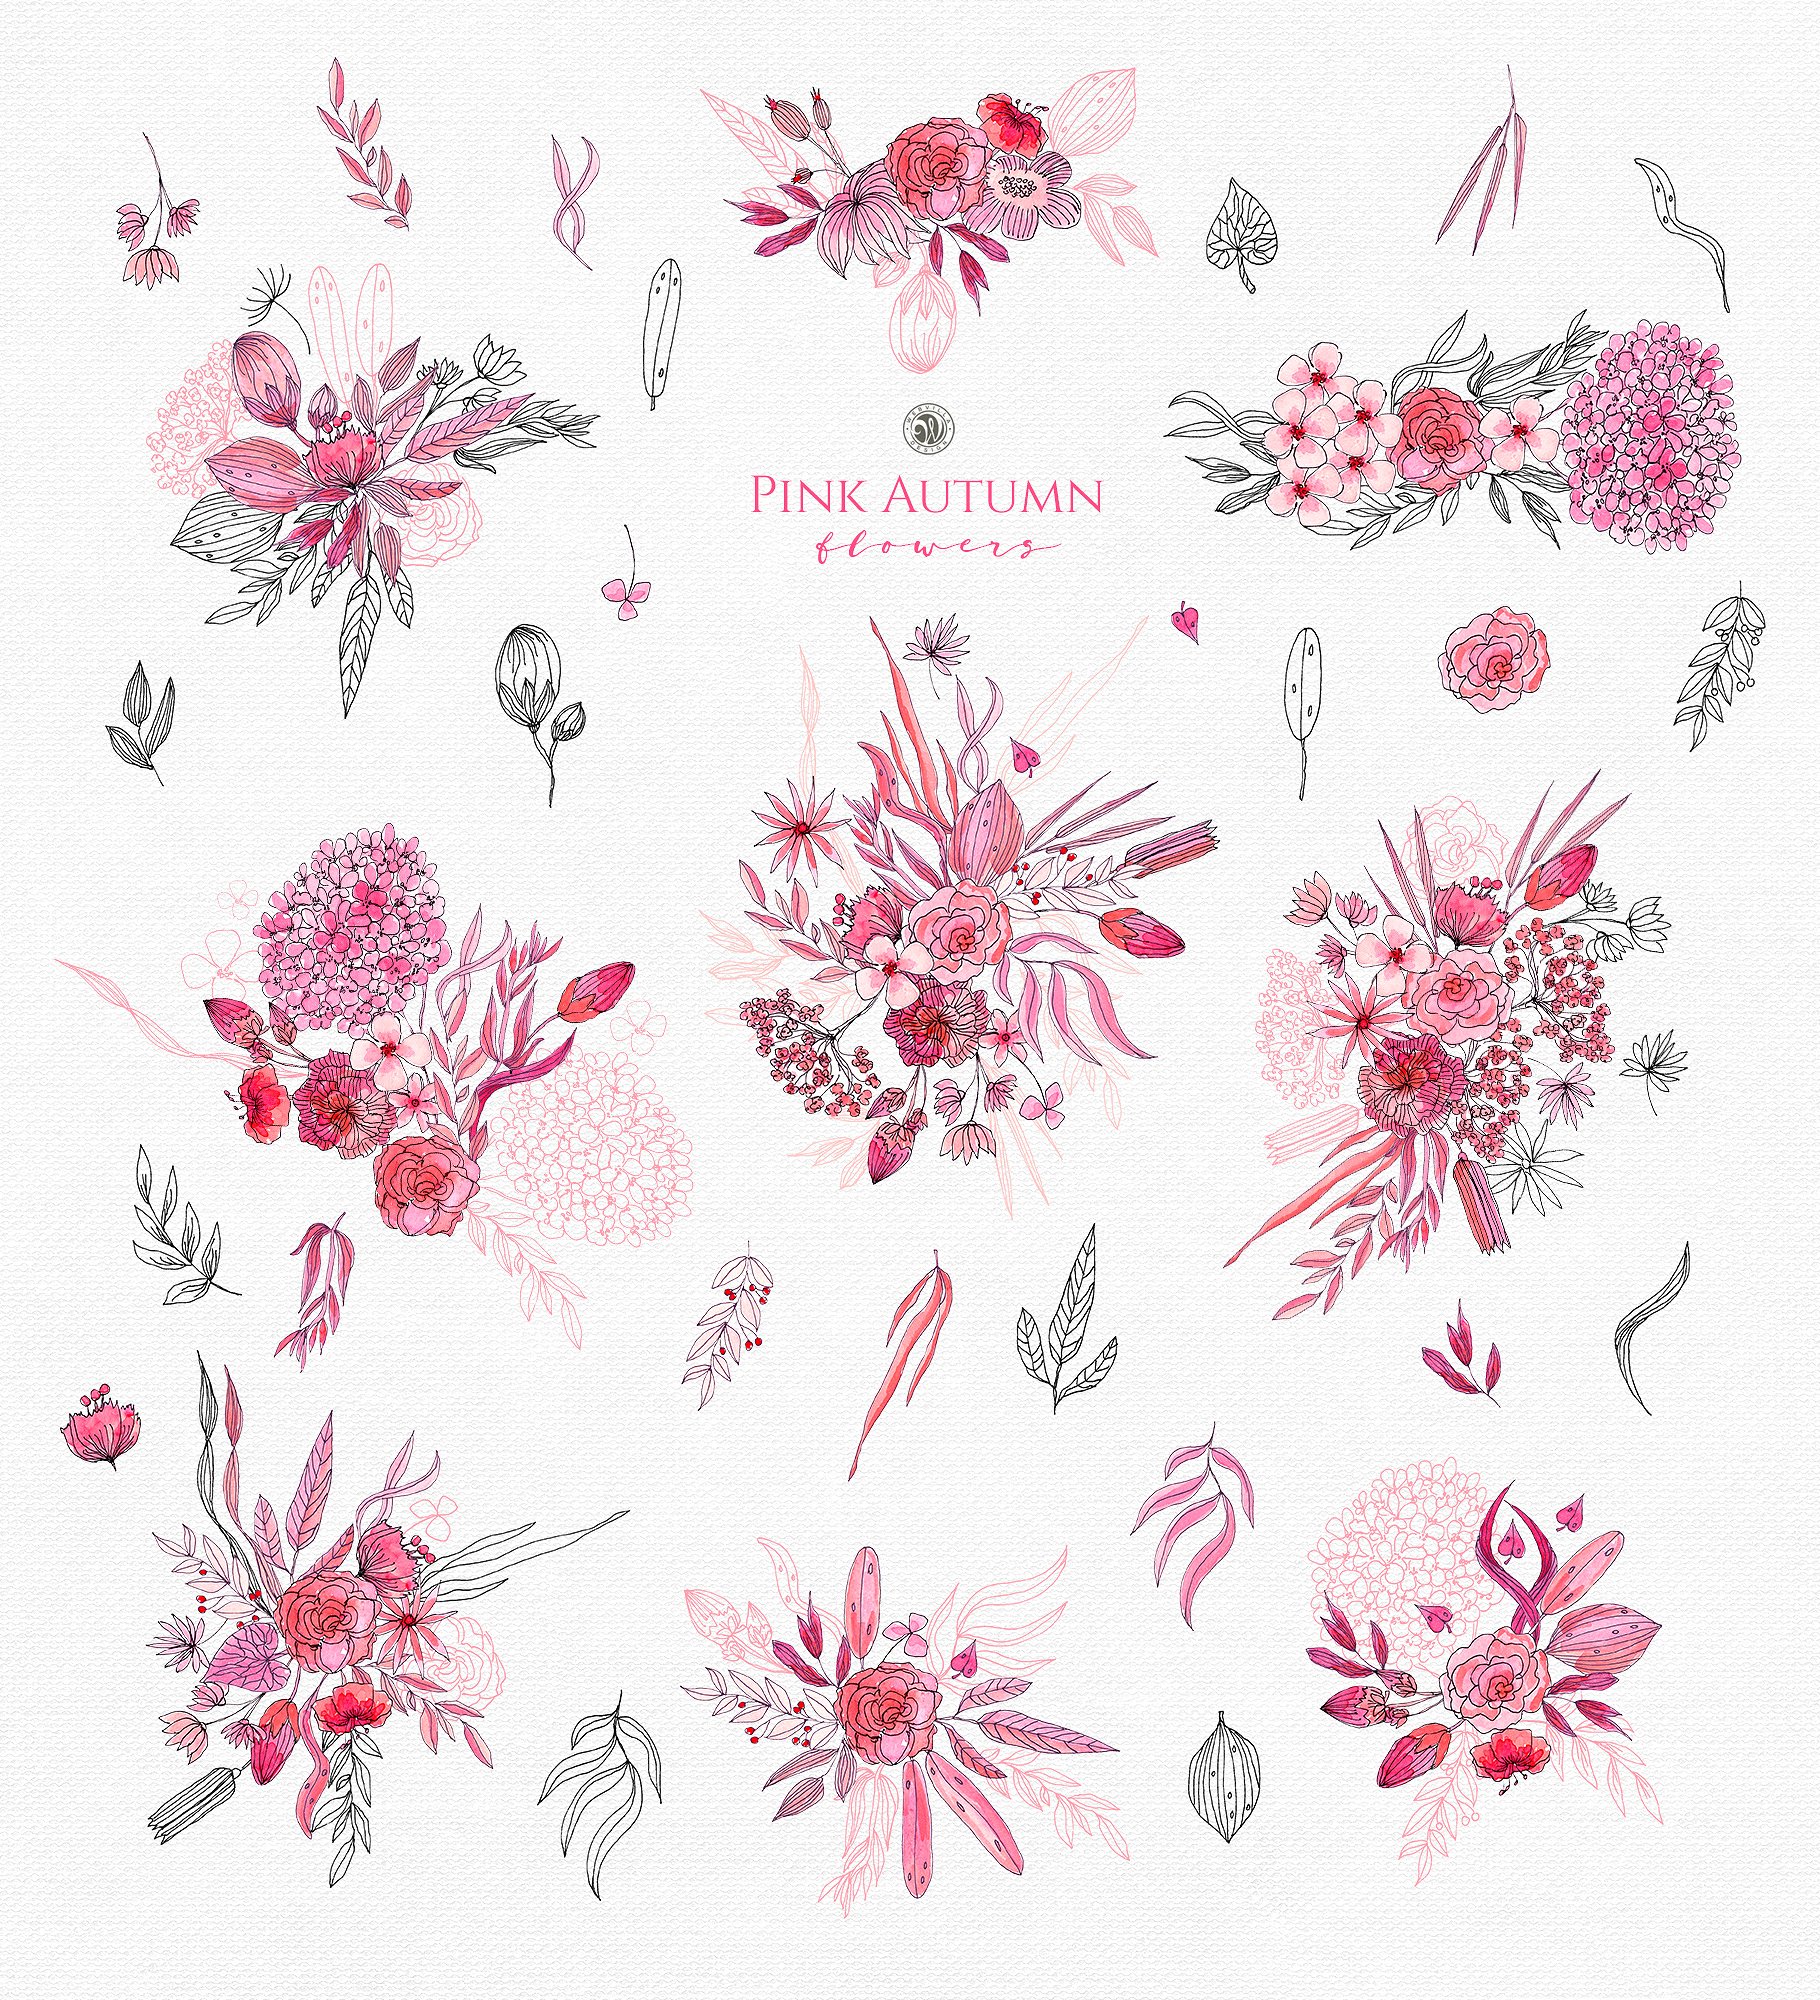 粉红水墨秋季水彩花卉插画 Pink Autumn Flowers插图(6)